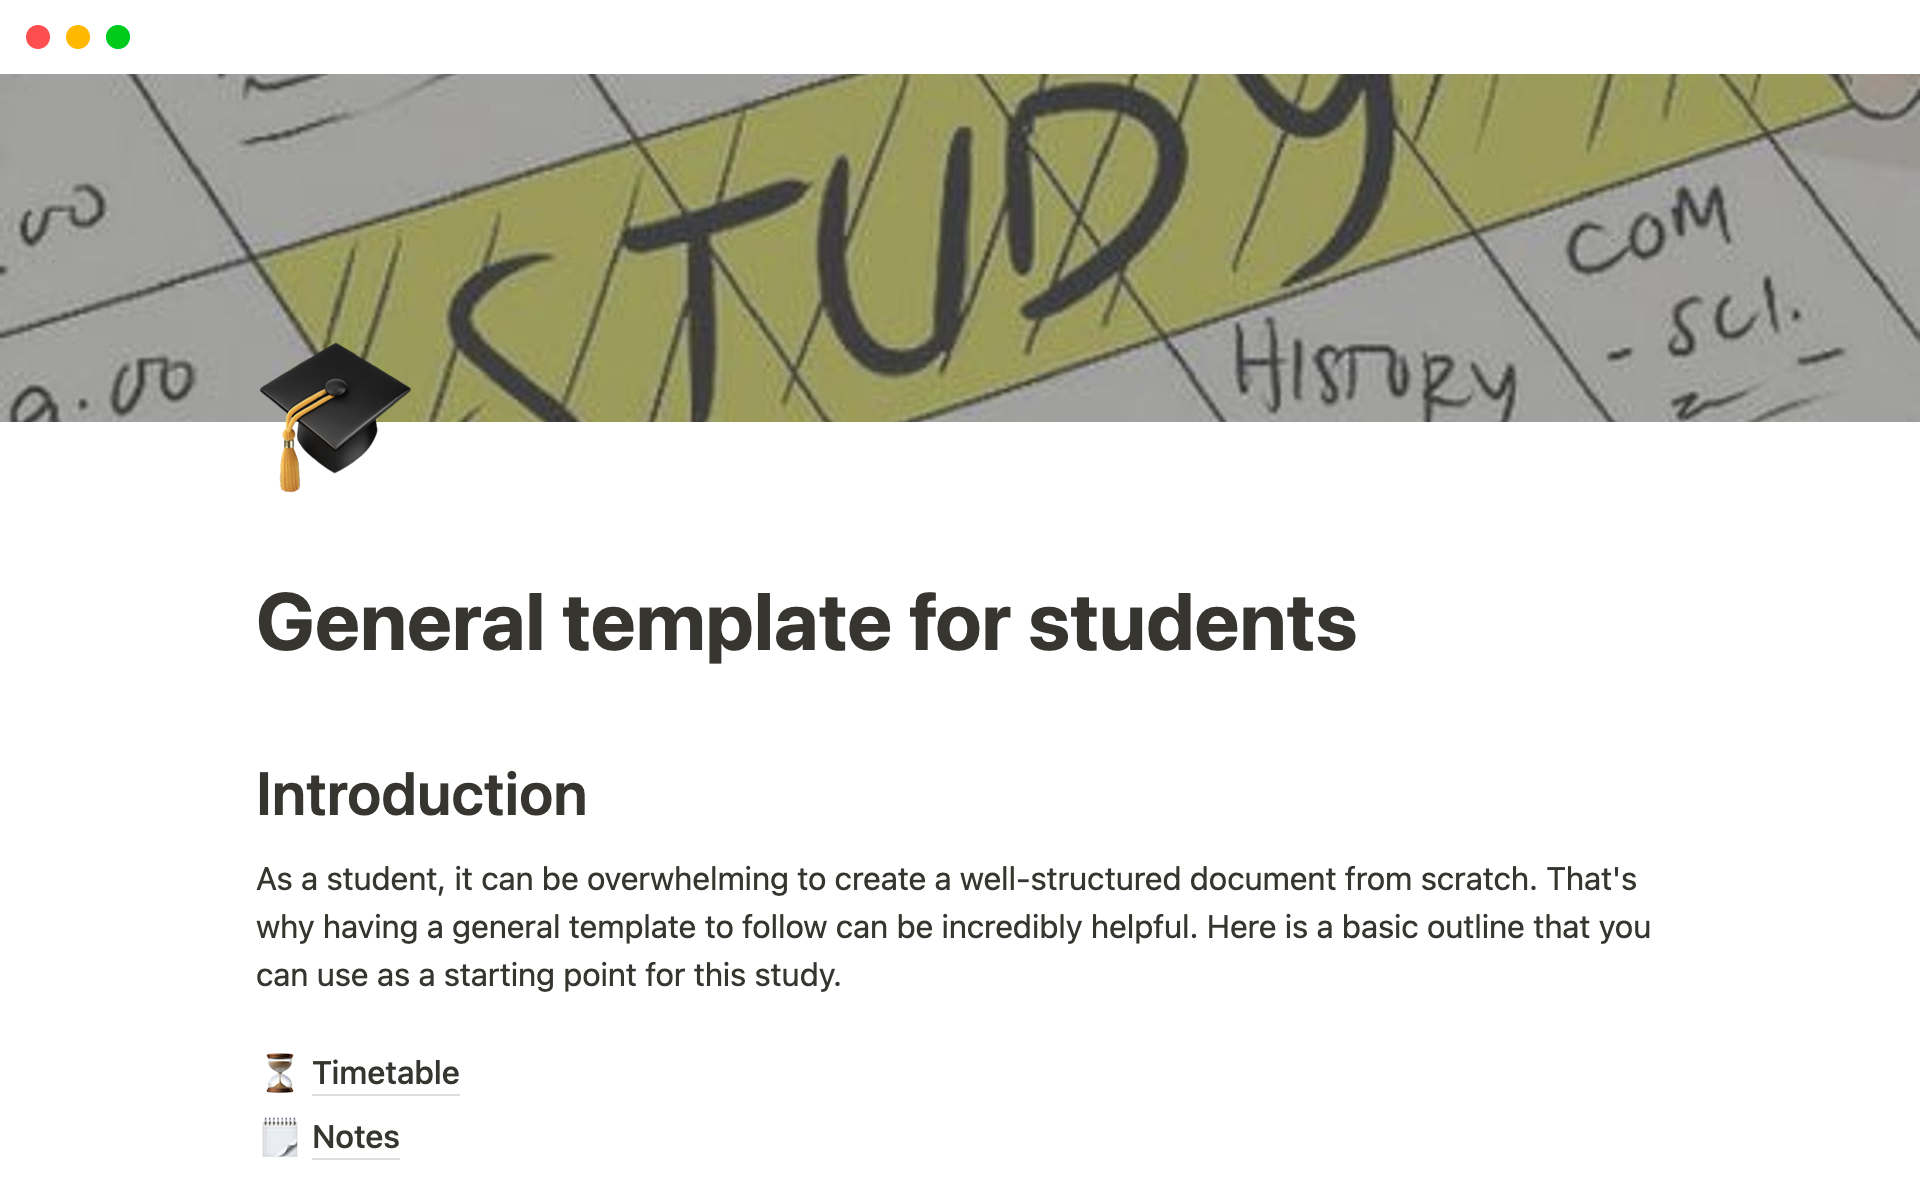 Vista previa de una plantilla para General template for students